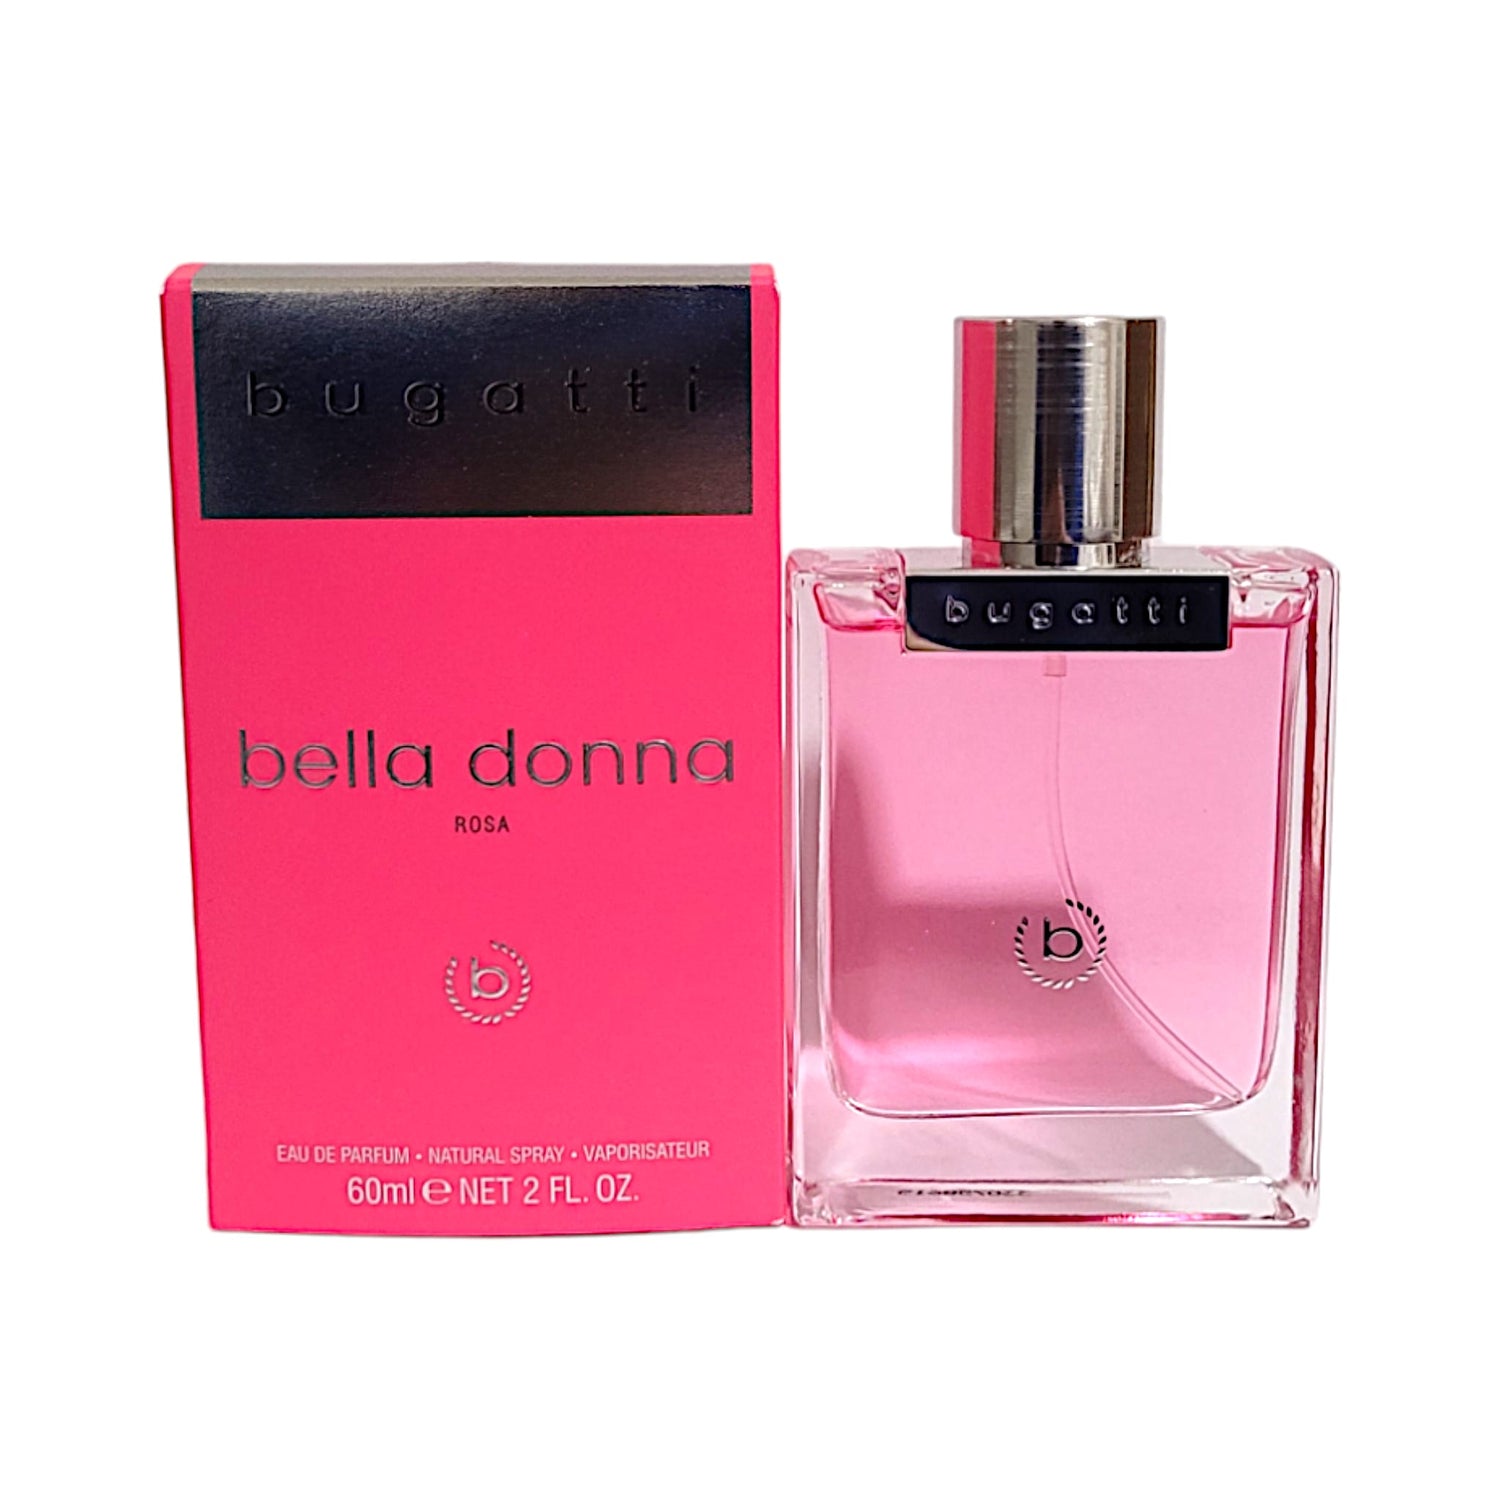 Bugatti Bella Donna Rosa Eau de Parfum 60 ml – Da Meso